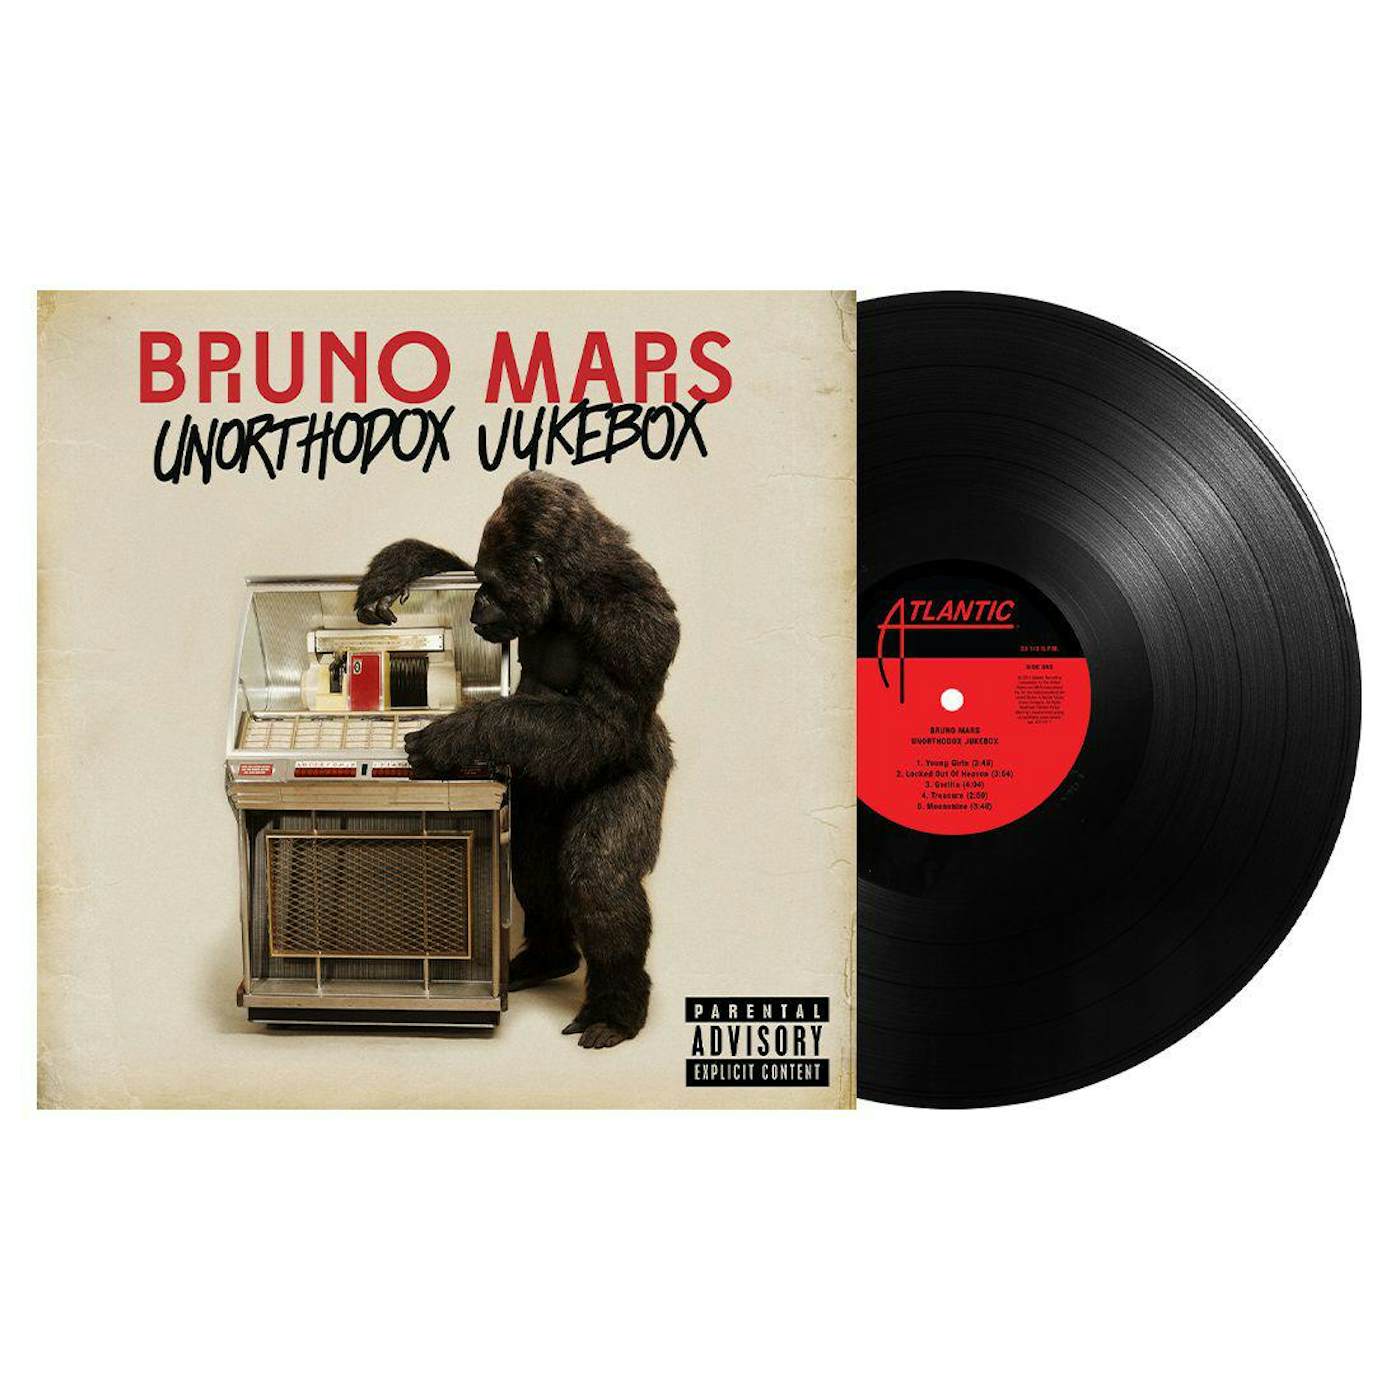 Bruno Mars Unorthodox Jukebox (Explicit Content) Vinyl Record